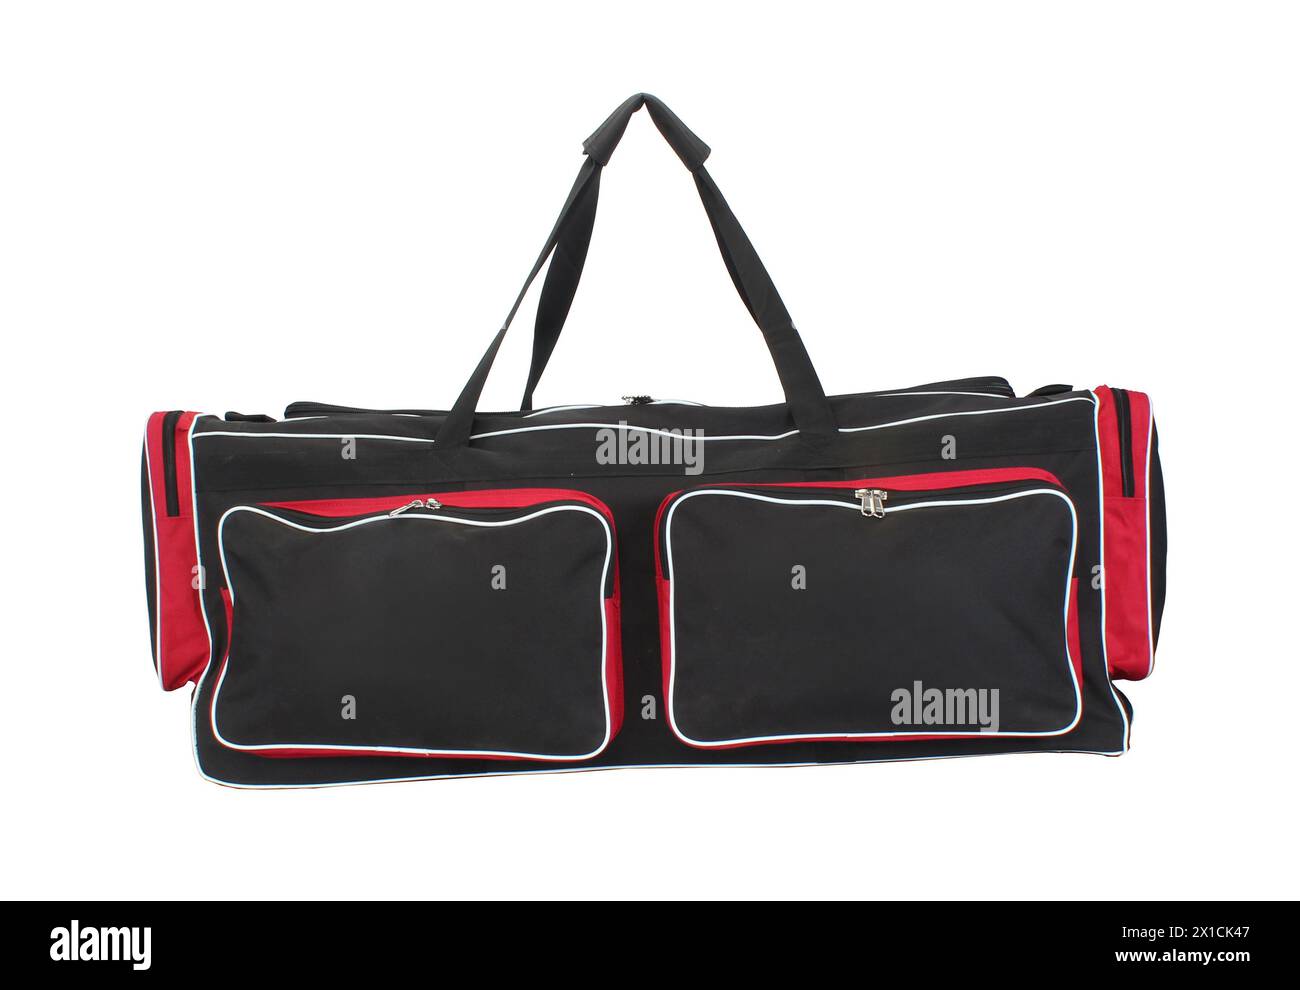 sac de kit de cricket rouge et noir plein format isolé sur fond blanc Banque D'Images